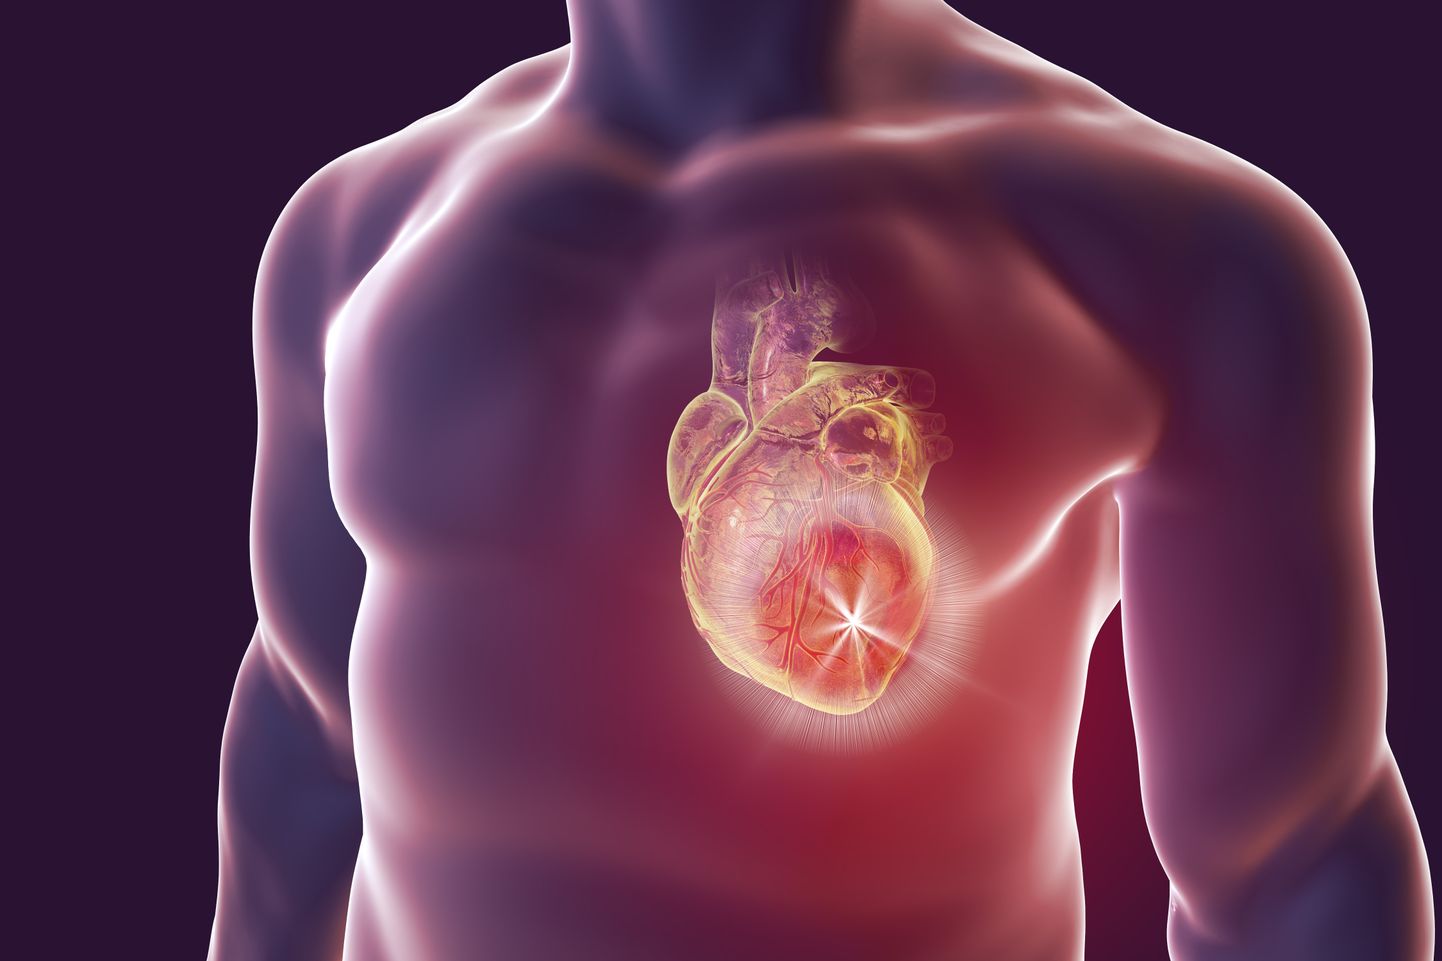 Müokardiit ehk südamelihase põletik tekib suurema tõenäosusega Covid-19 tõttu kui vaktsineerimise tõttu.